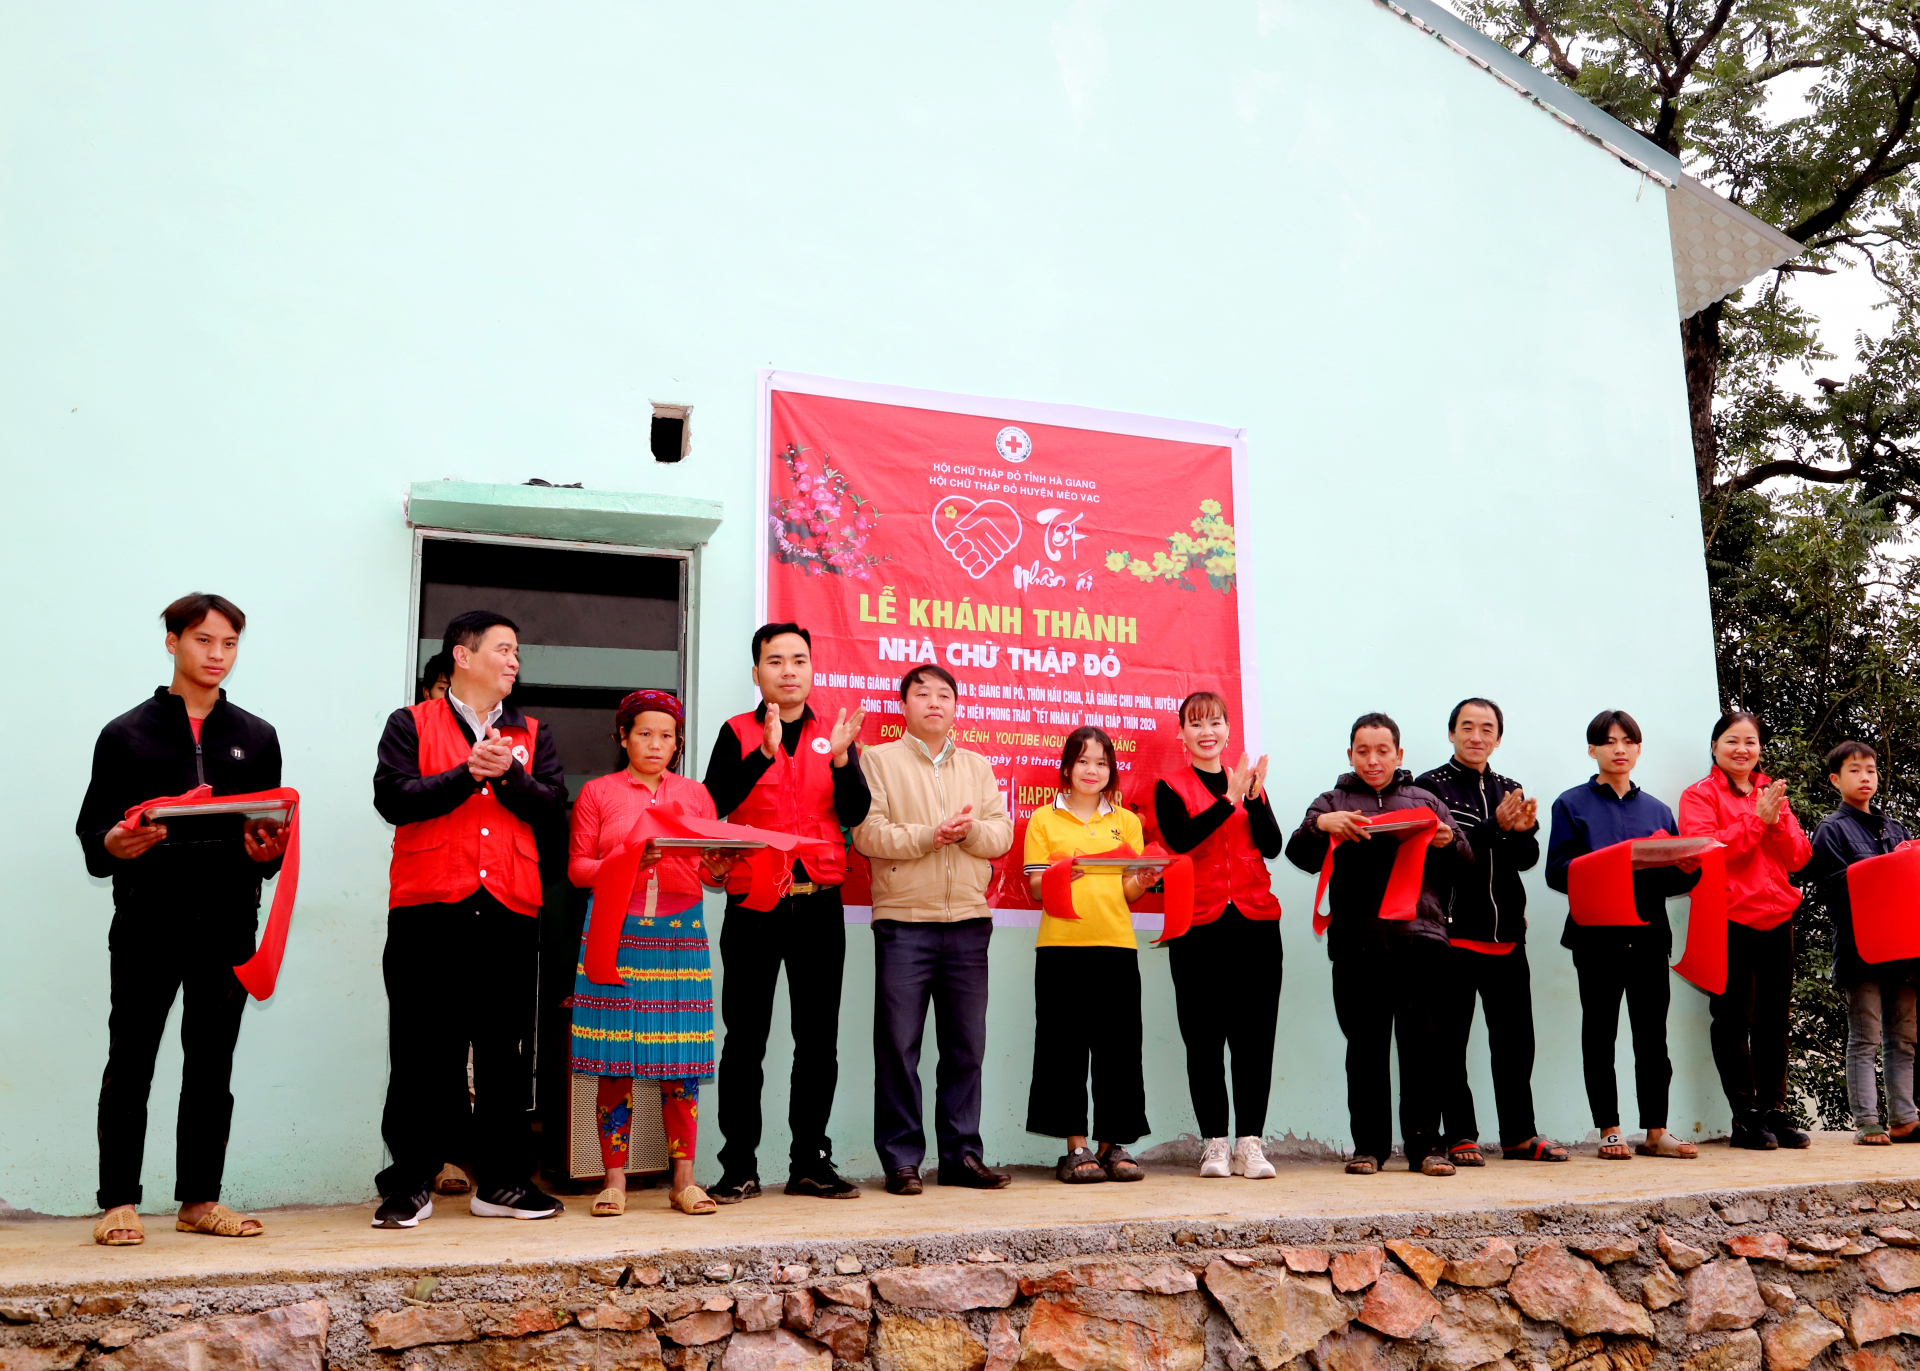 Đại diện Hội Chữ thập đỏ; cấp ủy, chính quyền địa phương cắt băng khánh thành nhà ông Giàng Mí Pó, thôn Hấu Chua, xã Giàng Chu Phìn.